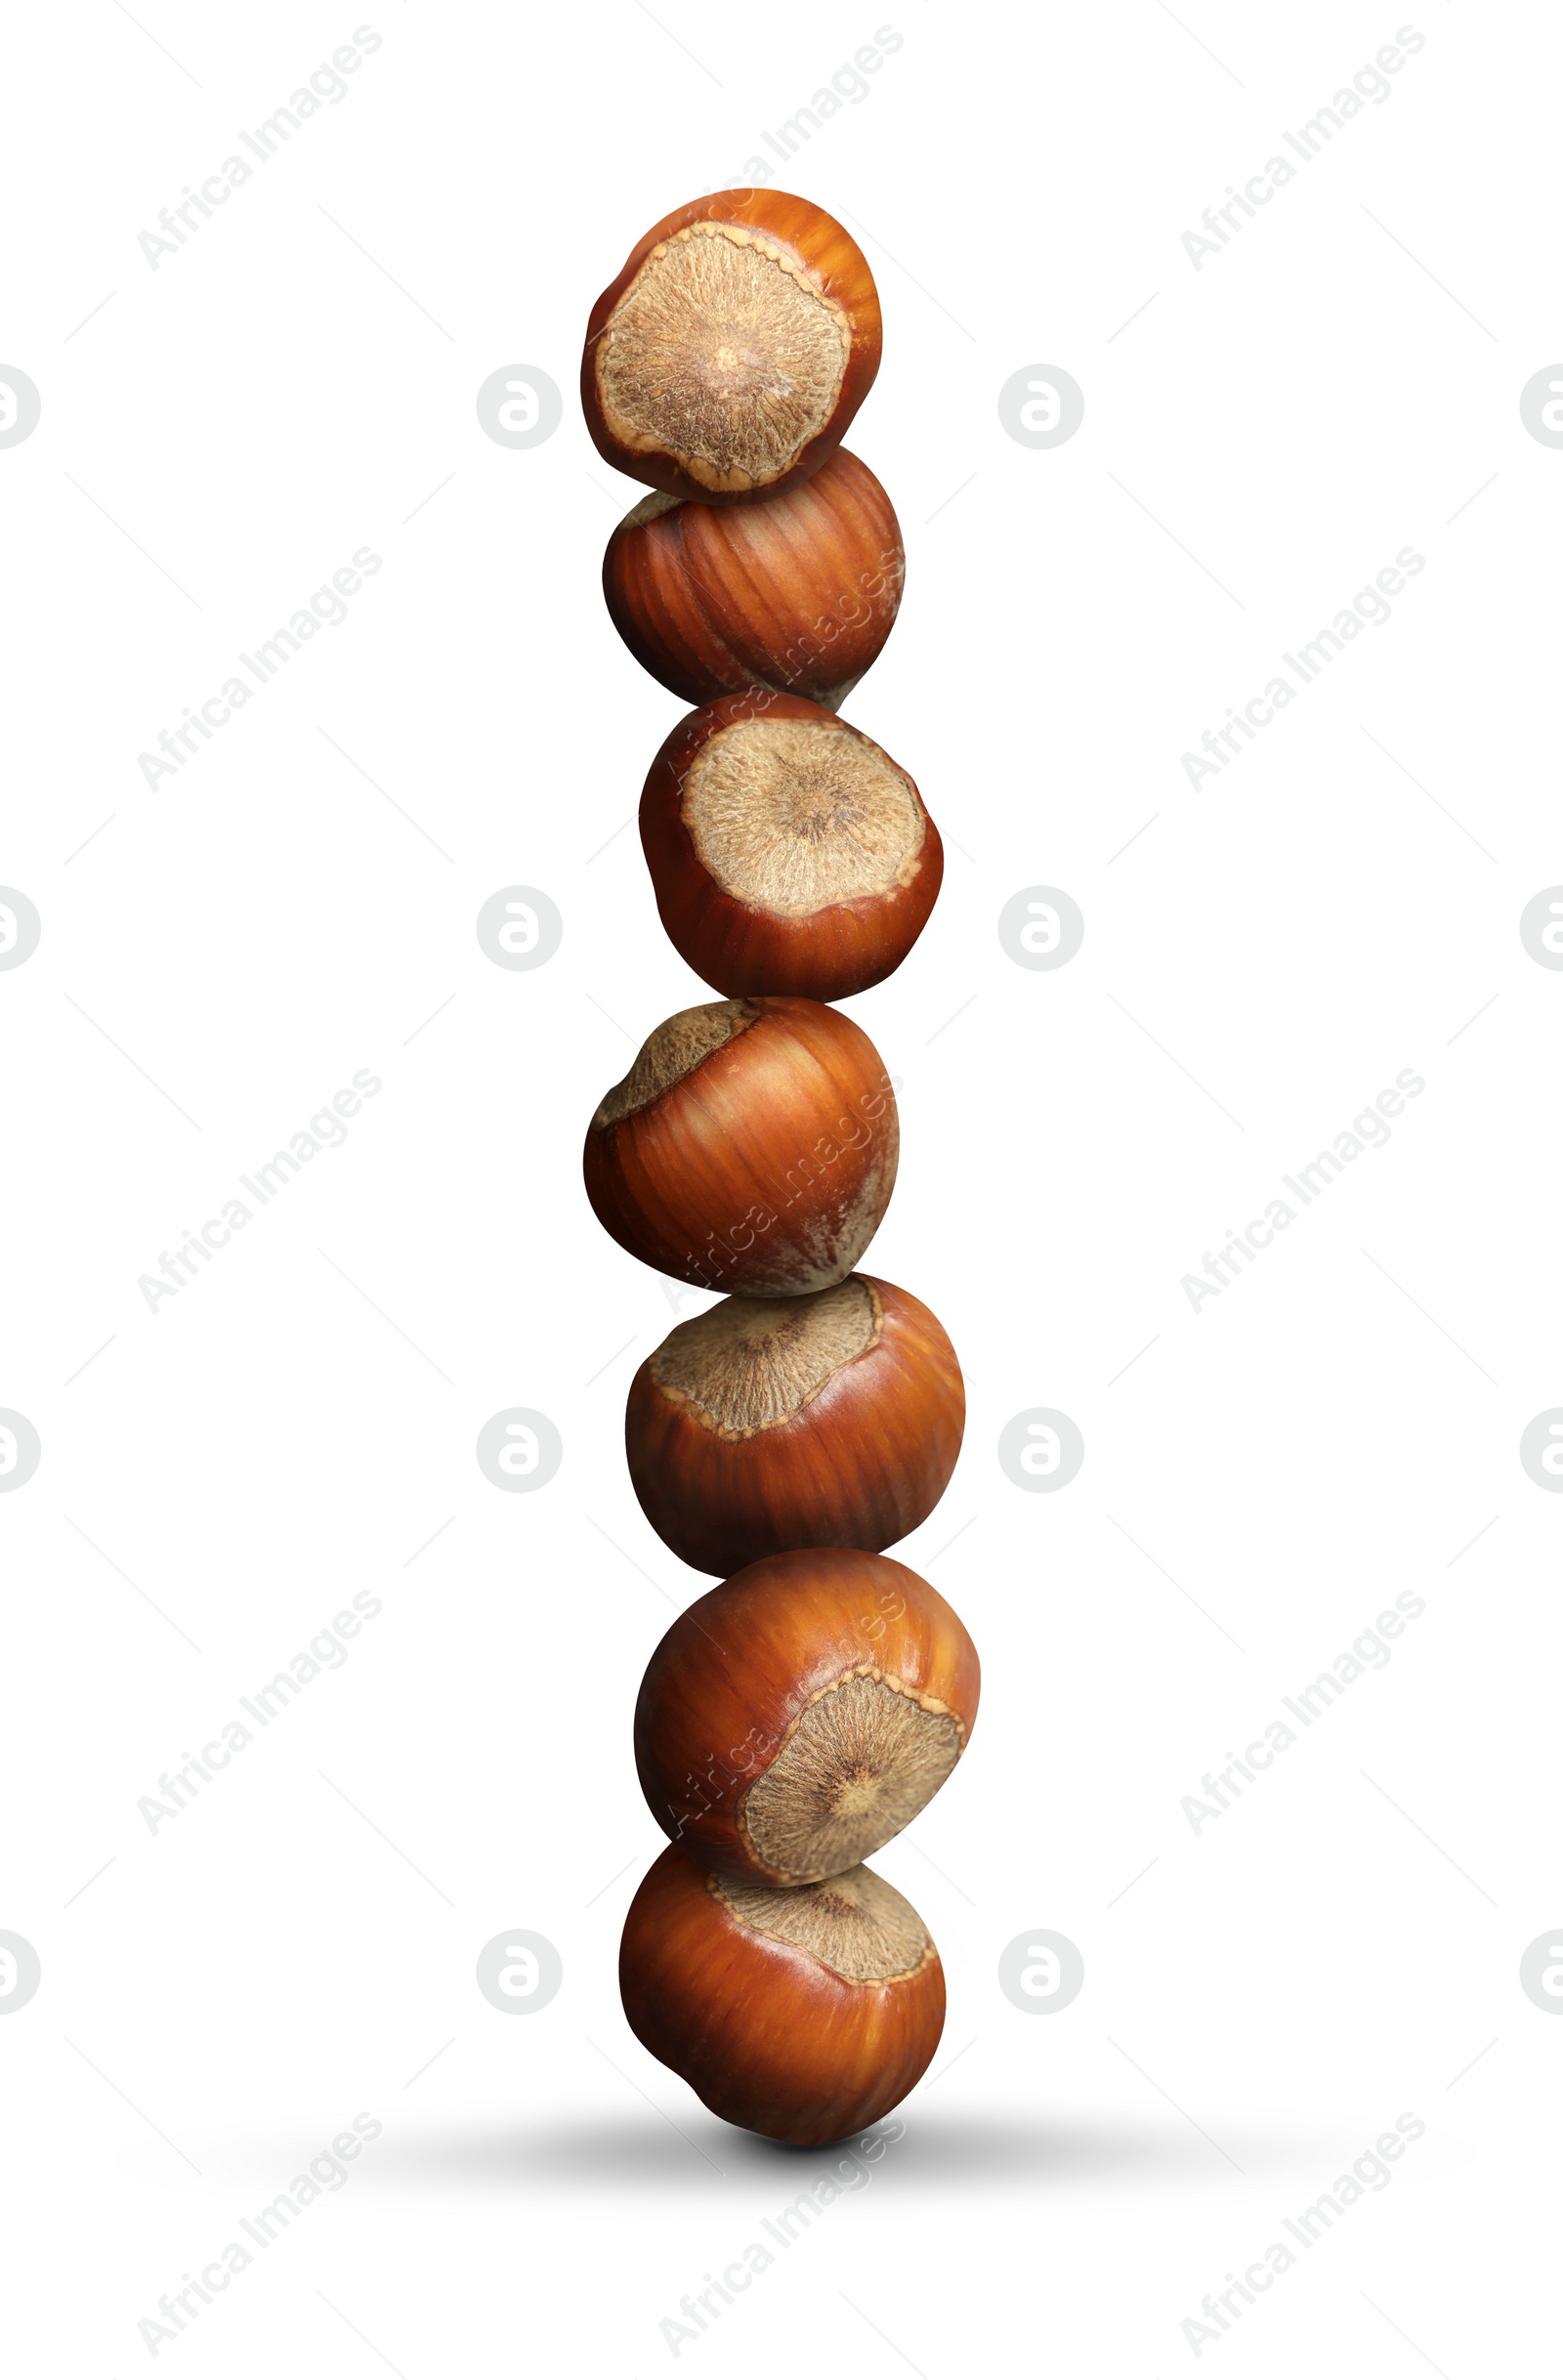 Image of Stack of many hazelnuts on white background